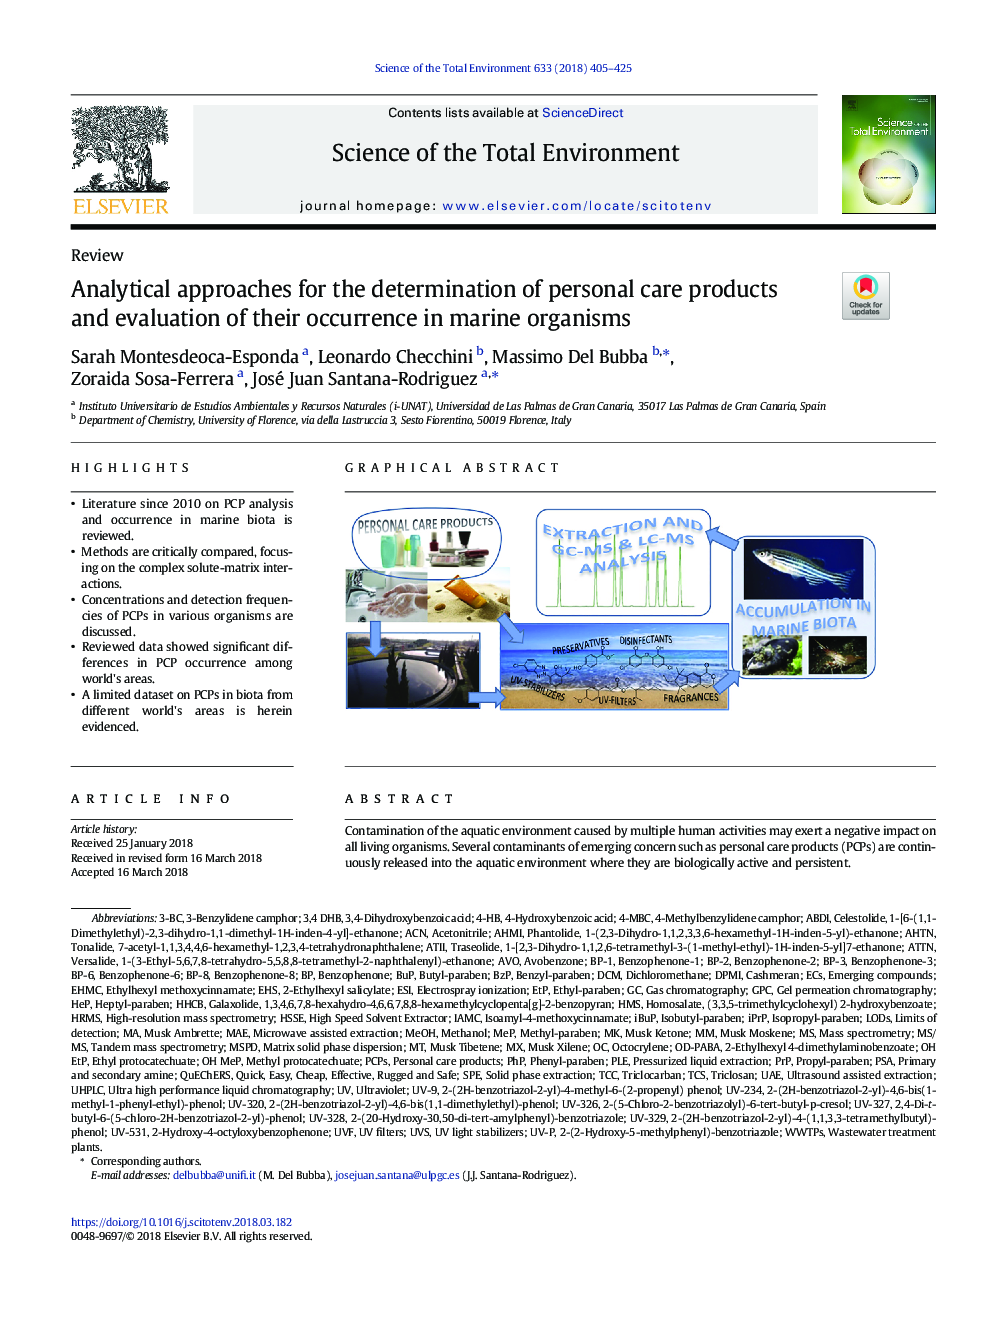 رویکردهای تحلیلی برای تعیین محصولات مراقبت شخصی و ارزیابی وقوع آنها در موجودات دریایی 